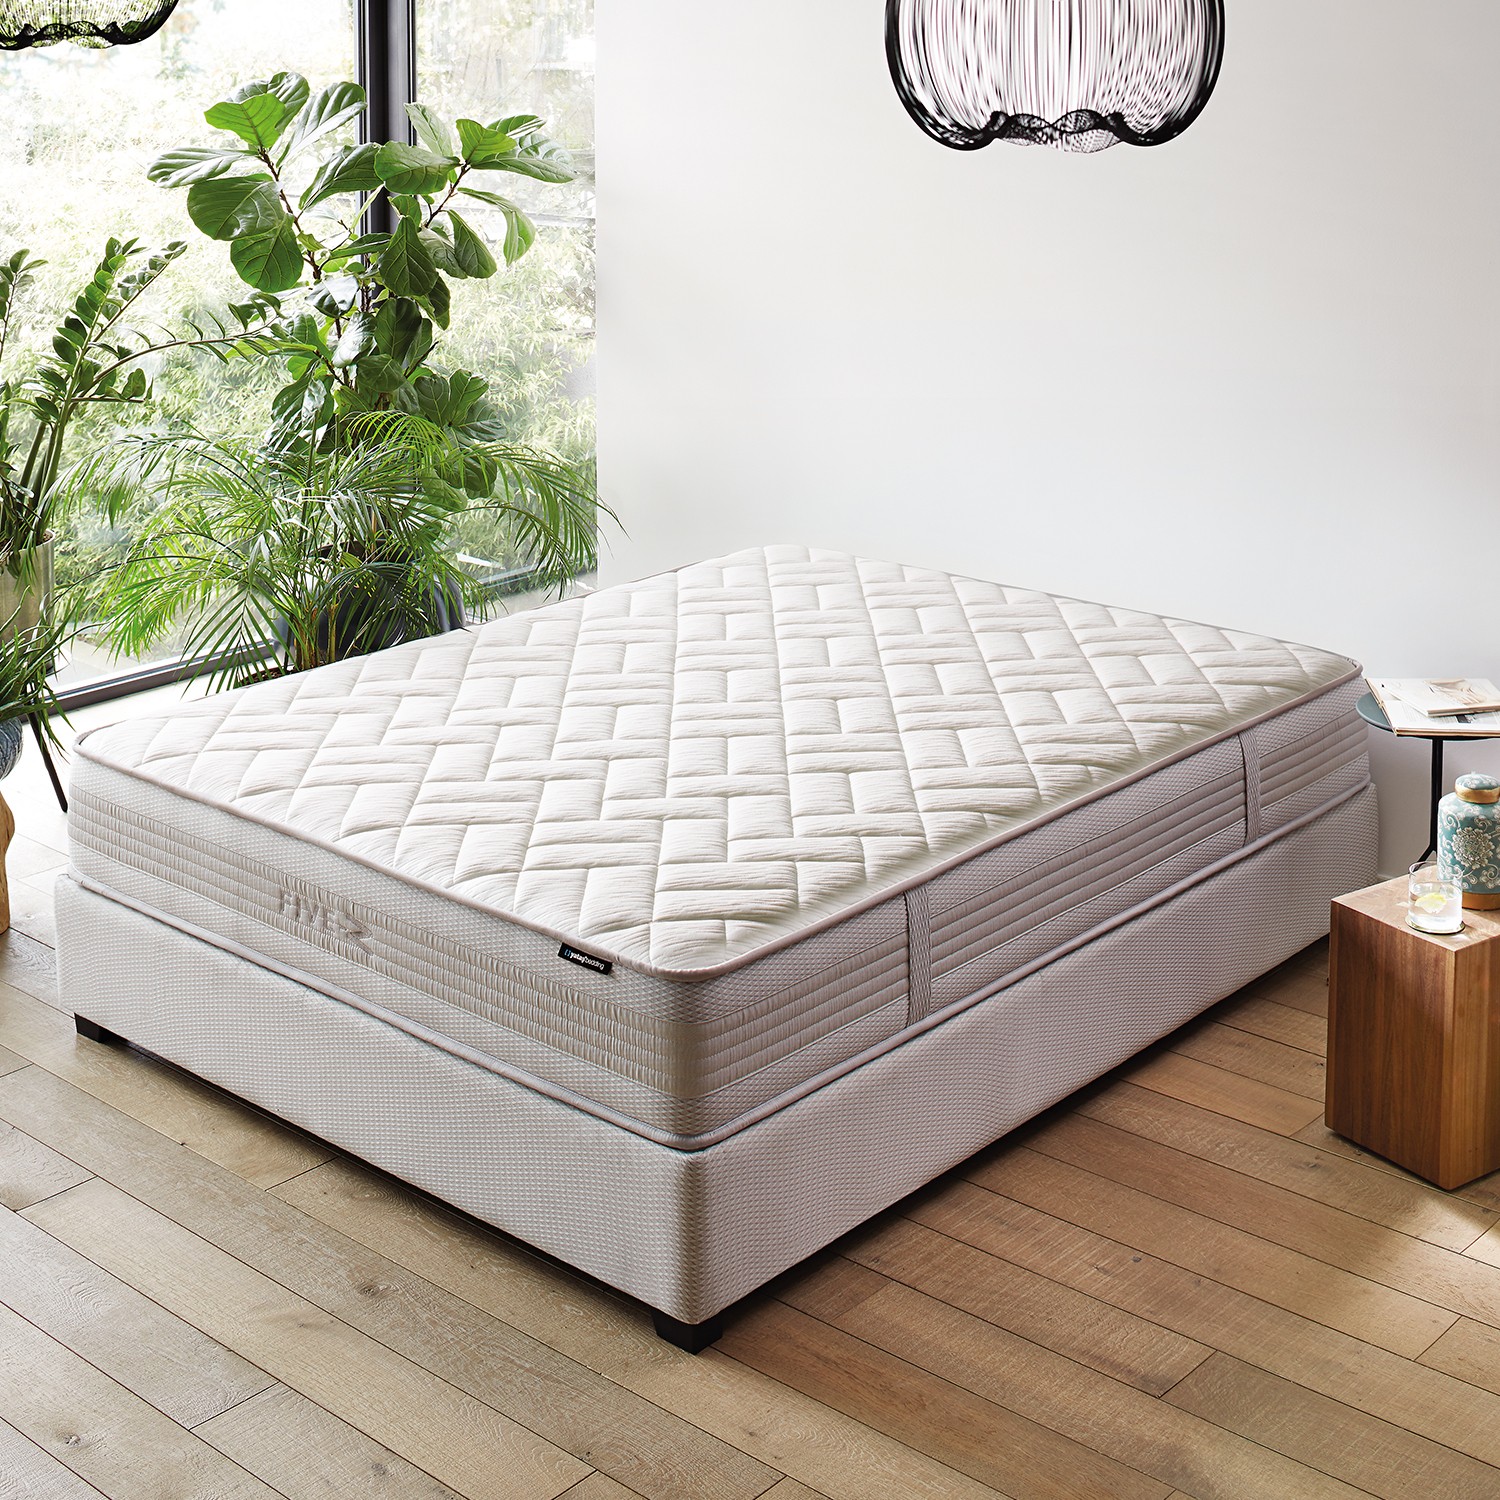 Yataş Bedding FıveZ Hybrid Seri Yatak(Çift Kişilik Fiyatı